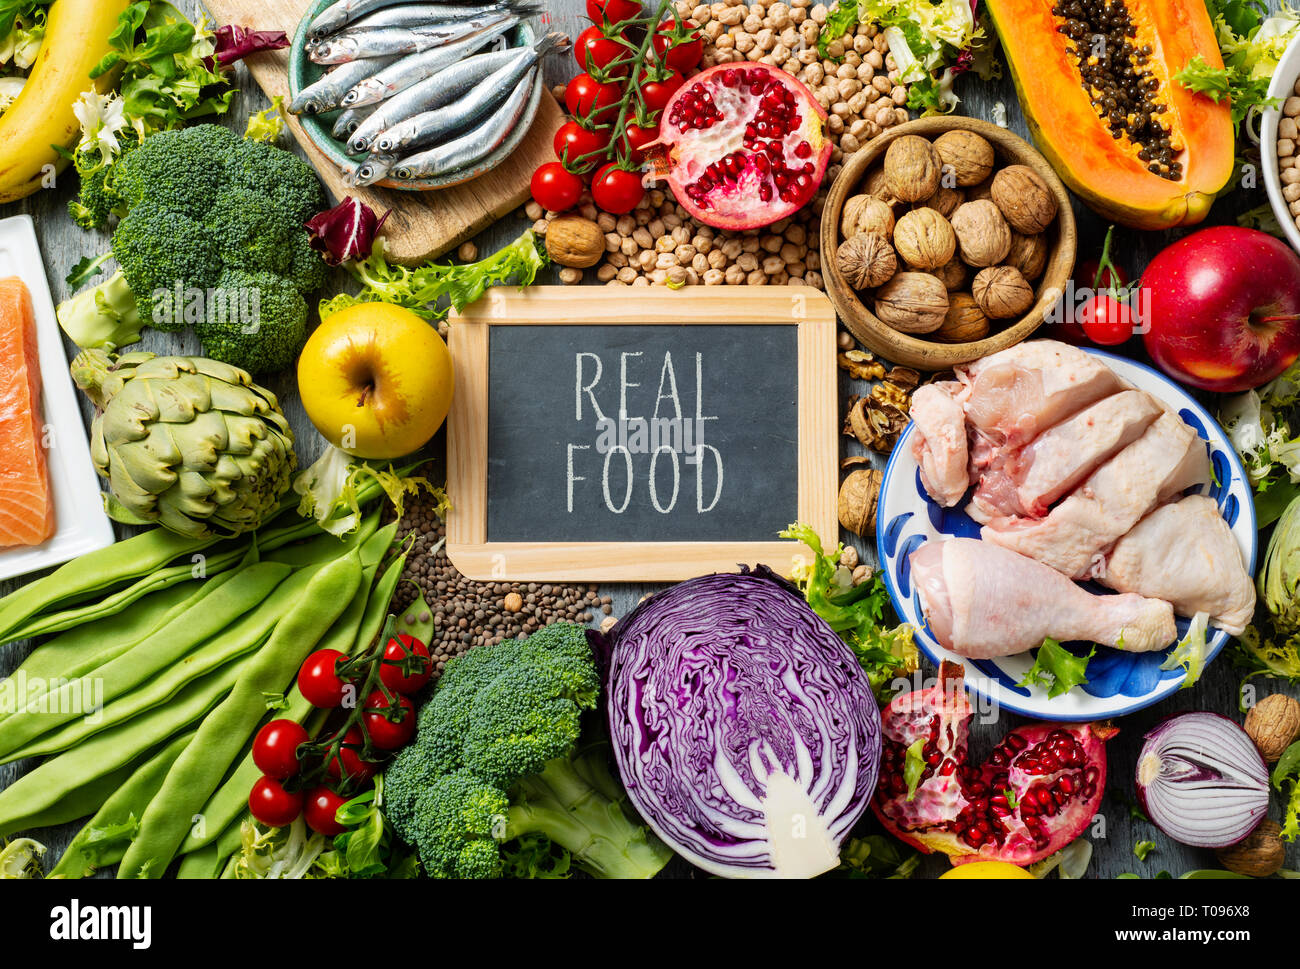 Eine Tafel mit dem Text Real Food geschrieben, auf einem Haufen unverarbeitete Nahrungsmittel, wie z. B. verschiedene rohe Früchte und Gemüse, Hülsenfrüchte und Nüsse, Stockfoto